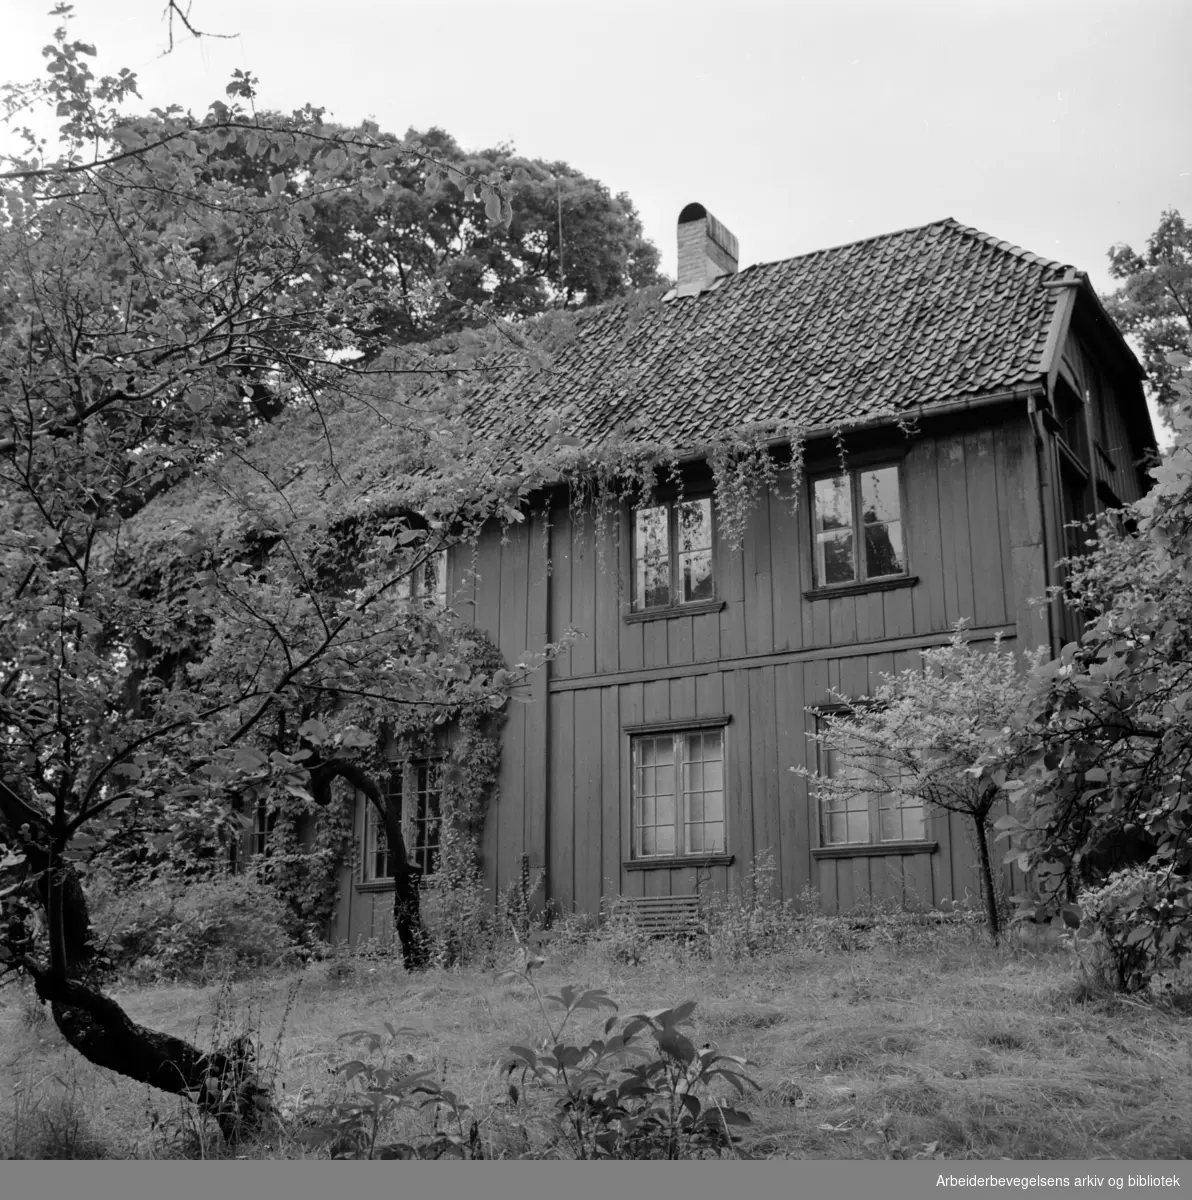 Majorstuveien 8. Maleren Amaldus Nielsens gamle hus, som midlertidig skal nyttes til sosialkontor. September 1965